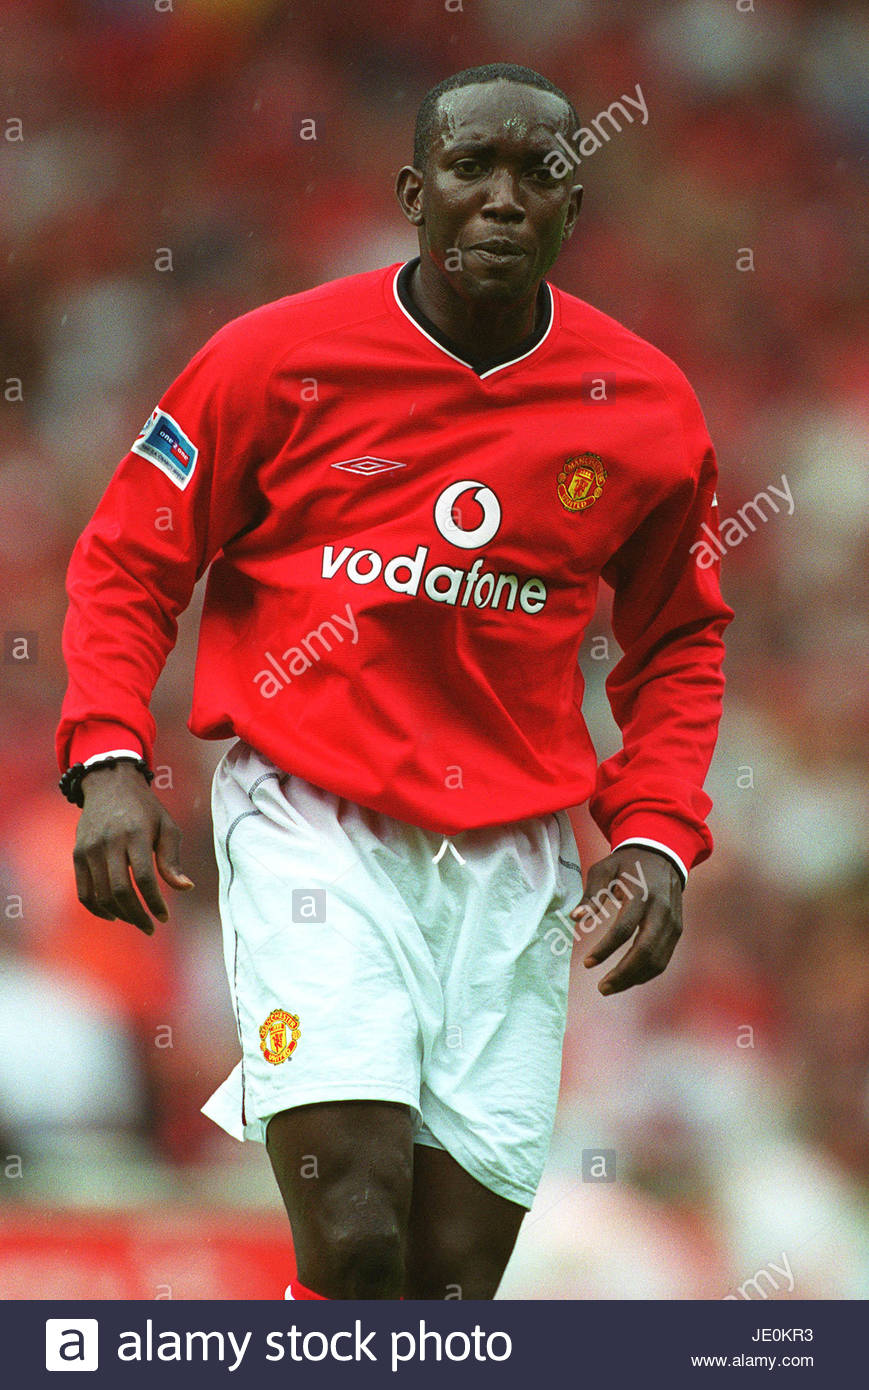 Áo đấu Manchester United 2000-2002 home chữ ký Yorke shirt jersey